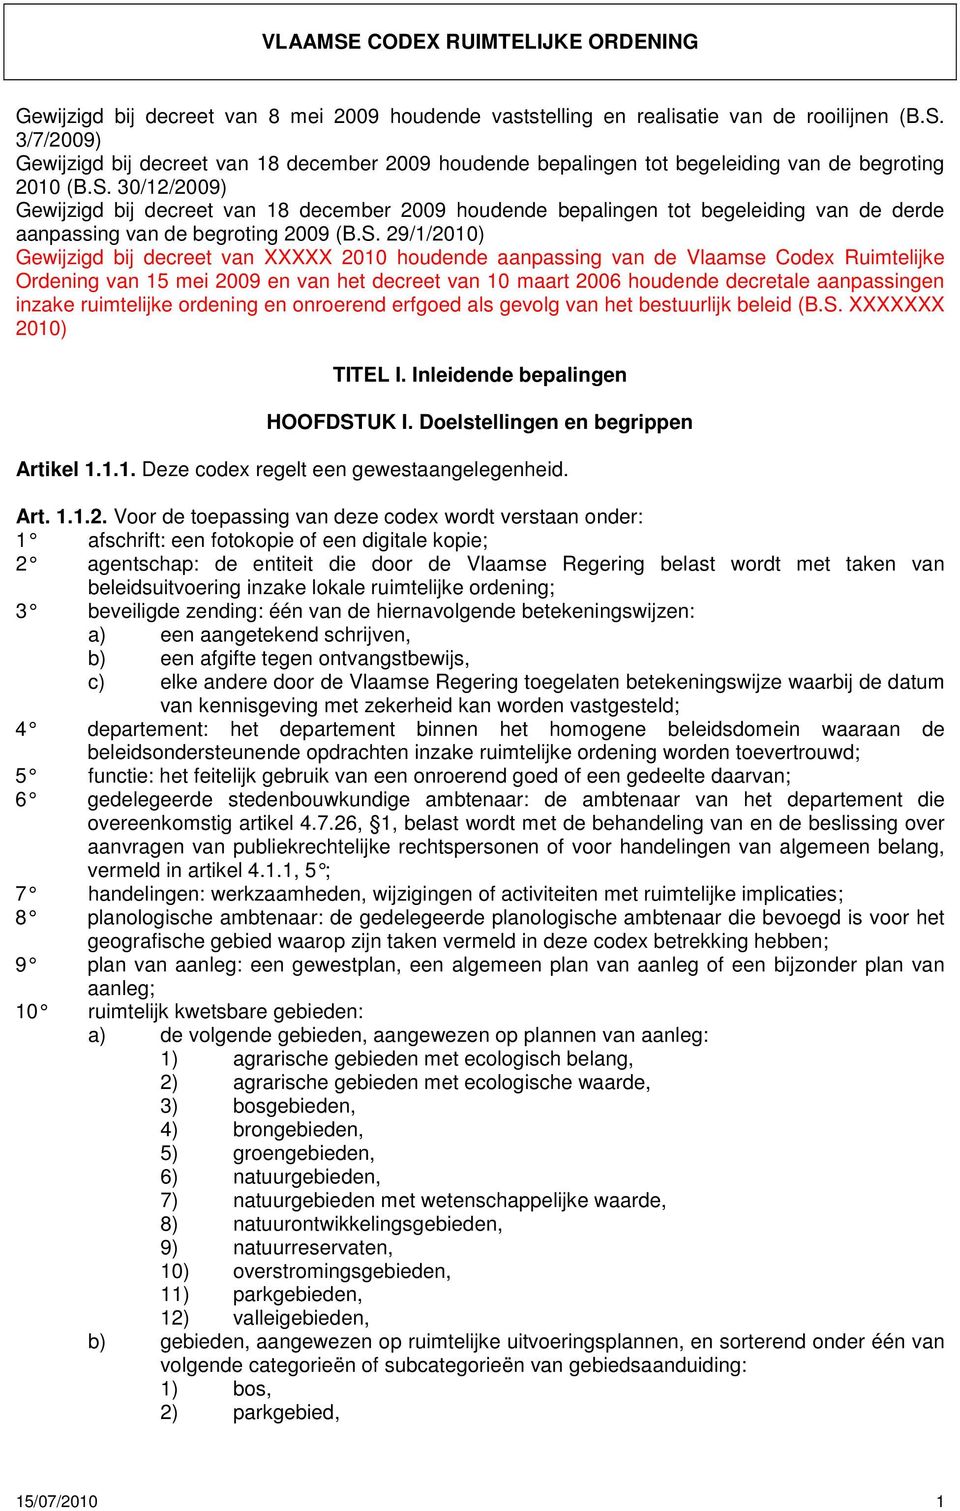 houdende aanpassing van de Vlaamse Codex Ruimtelijke Ordening van 15 mei 2009 en van het decreet van 10 maart 2006 houdende decretale aanpassingen inzake ruimtelijke ordening en onroerend erfgoed als